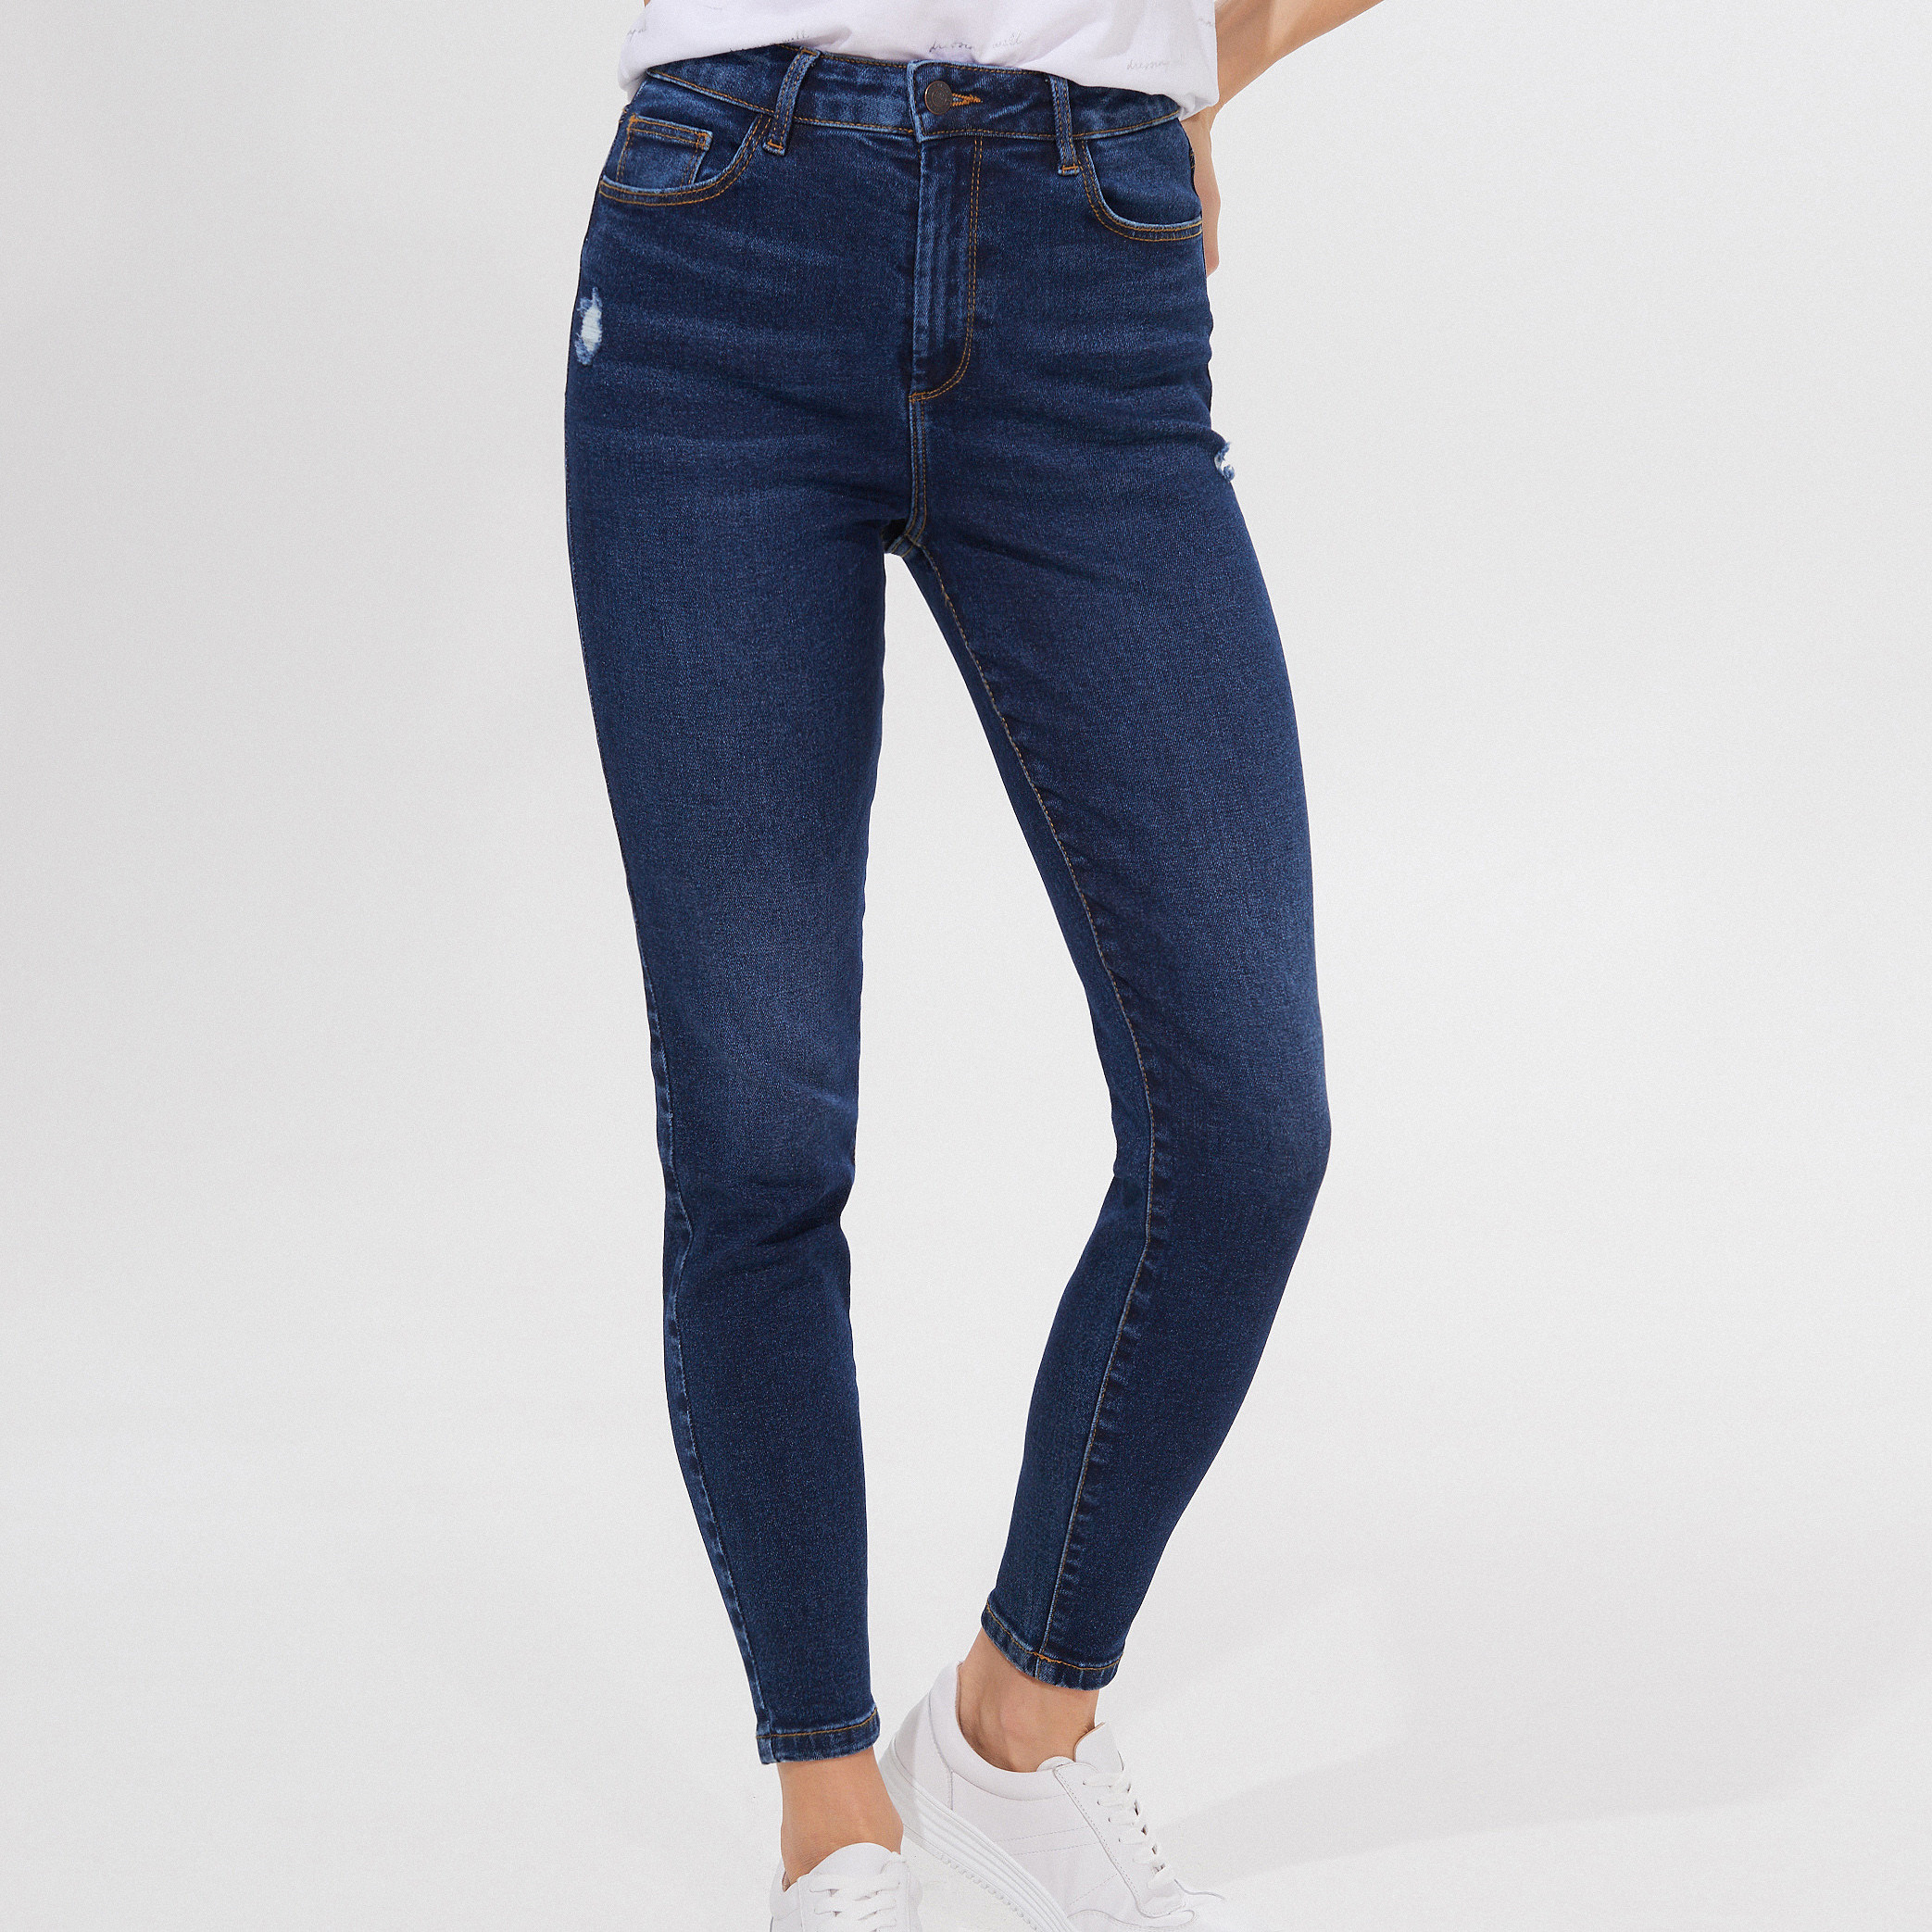 Collection jean. Skinny Fit джинсы женские. Джинсы скинни женские для полных синие. Джинсы Mohito. Джинсы синие однотонные.